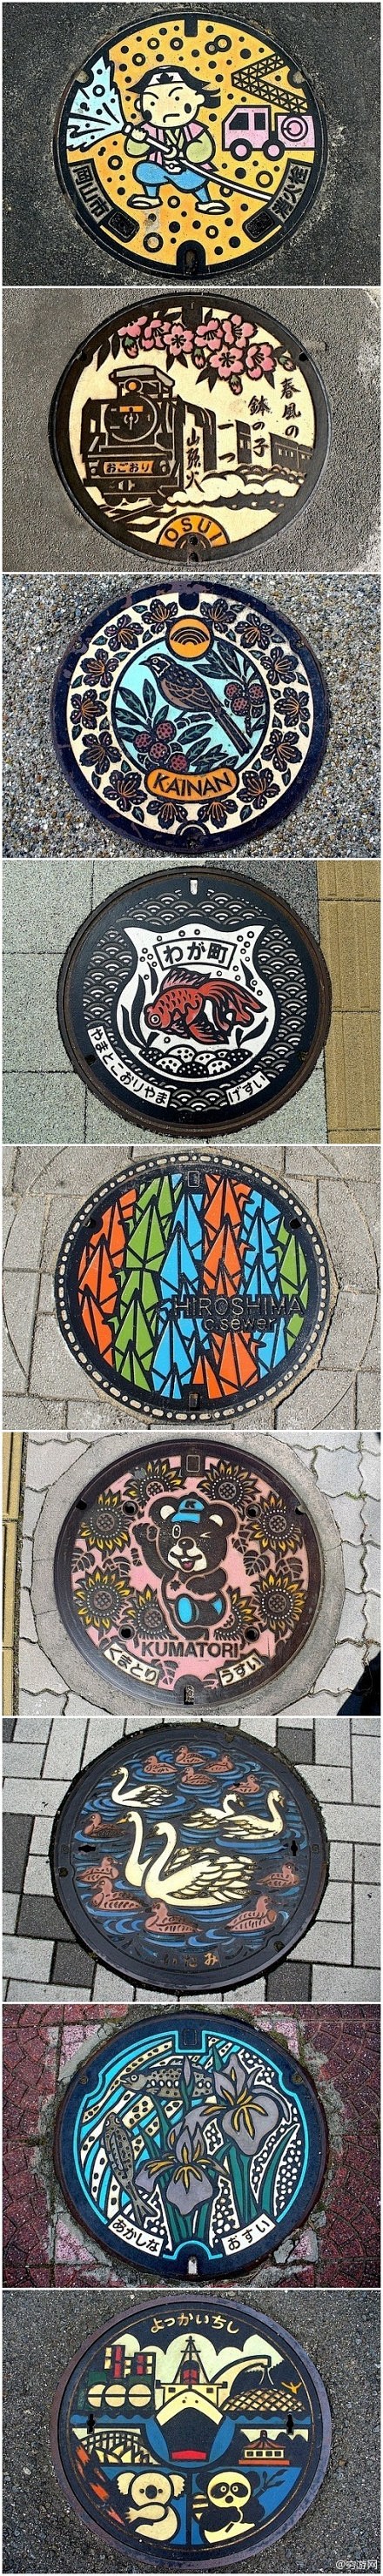 日本各个城市有爱的井盖文化